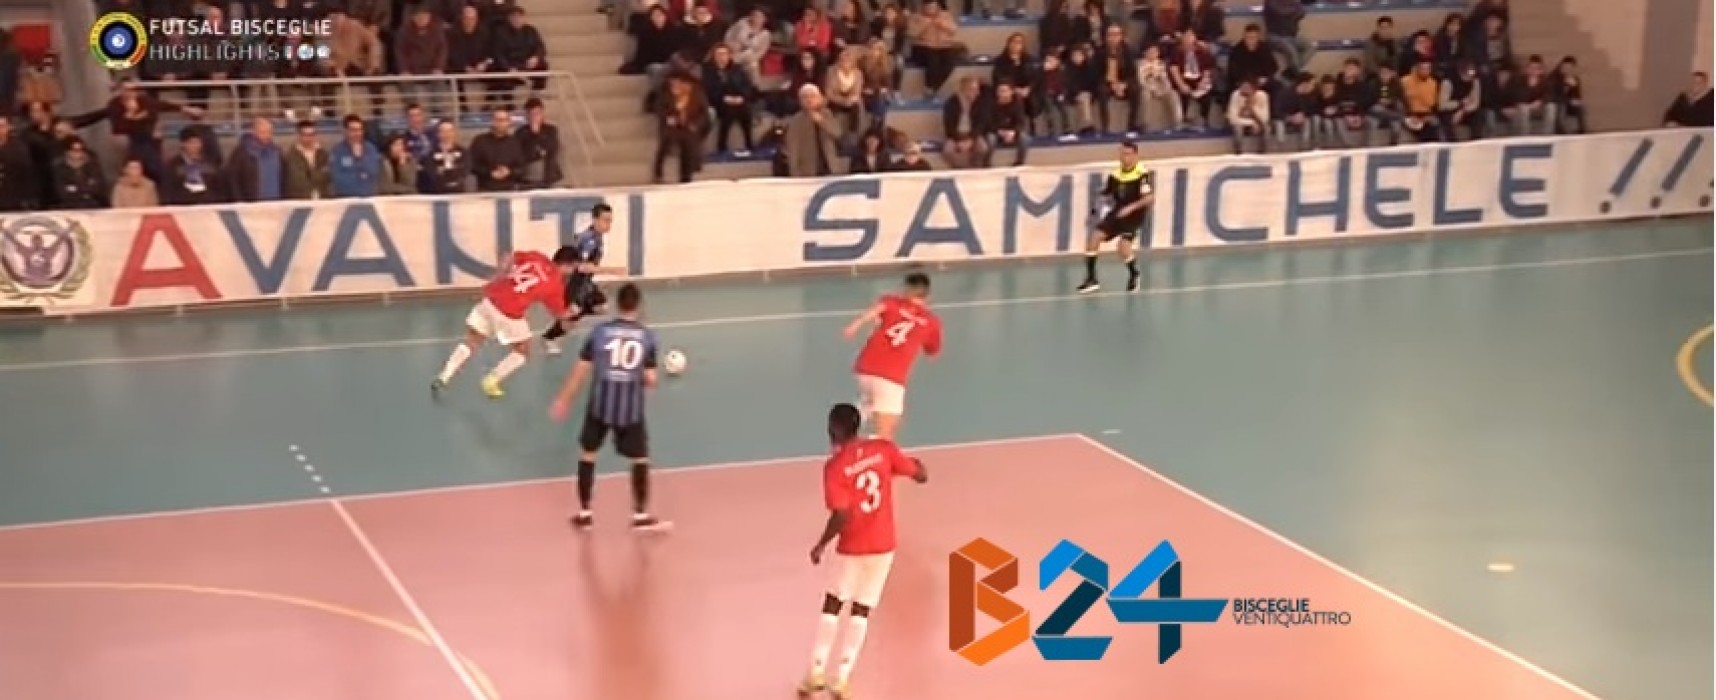 Sammichele-Futsal Bisceglie 4-4 / VIDEO HIGHLIGHTS